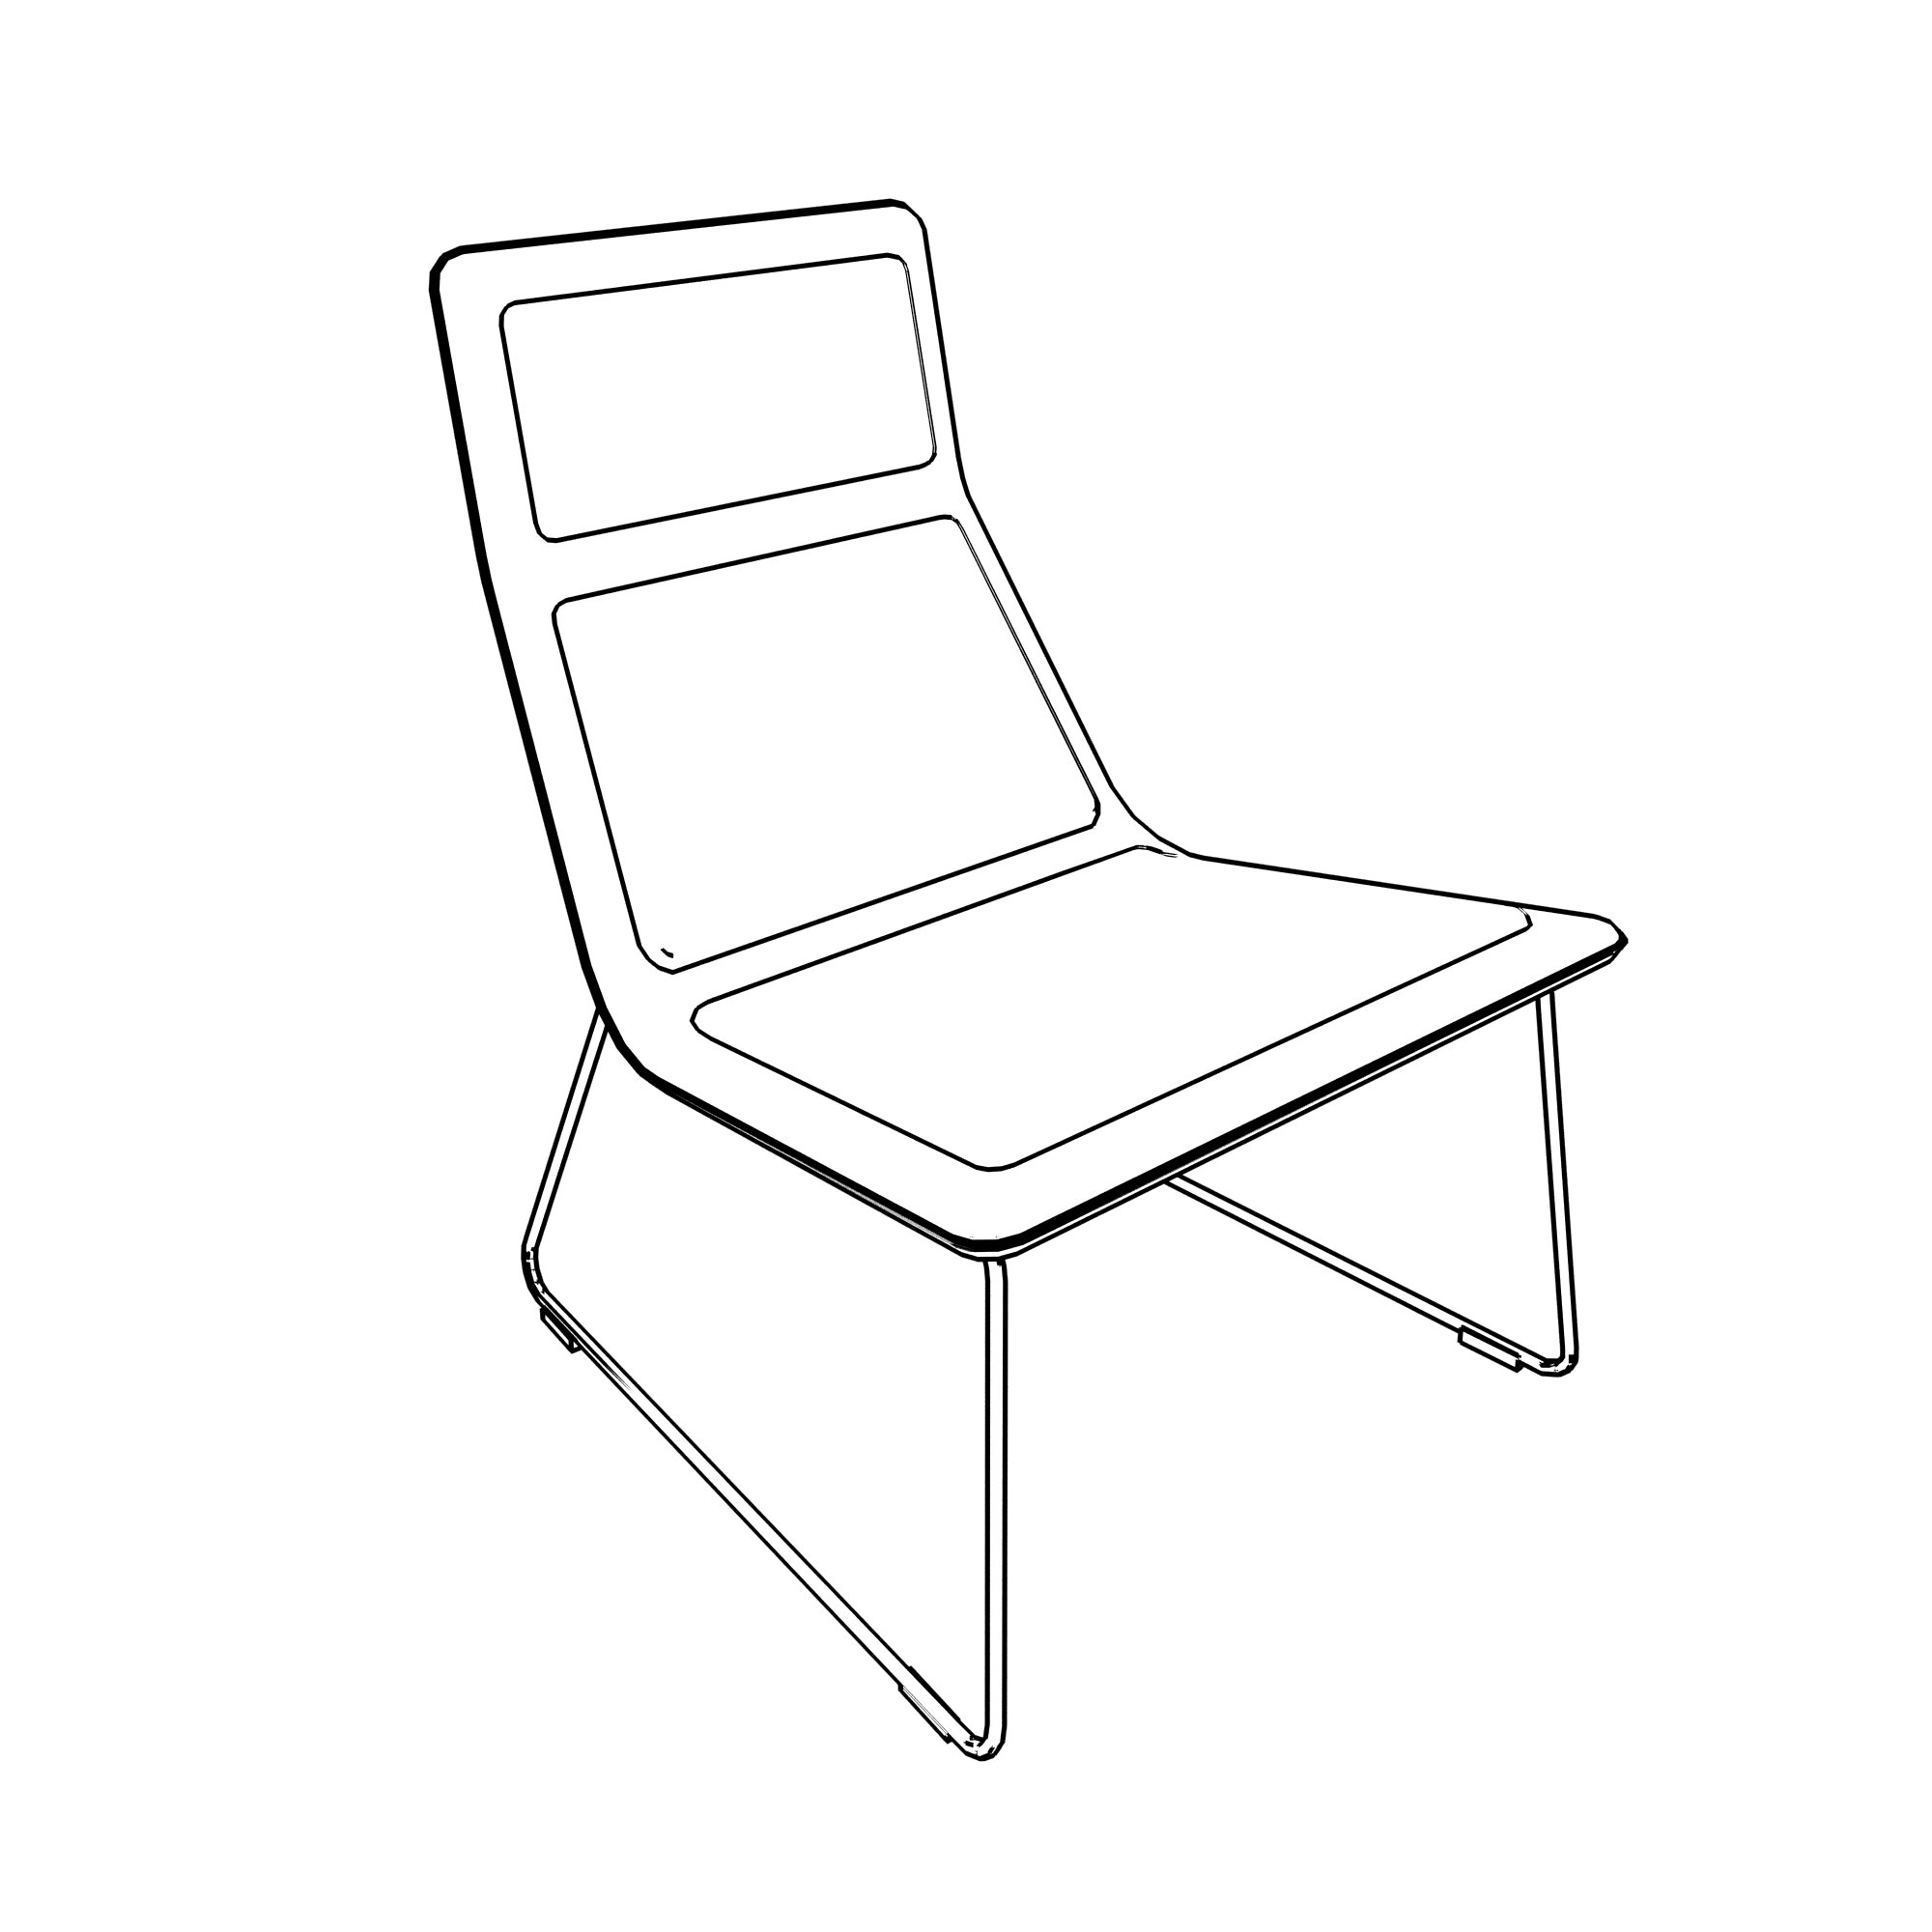 See Haworth Low Pad Lounge Chair